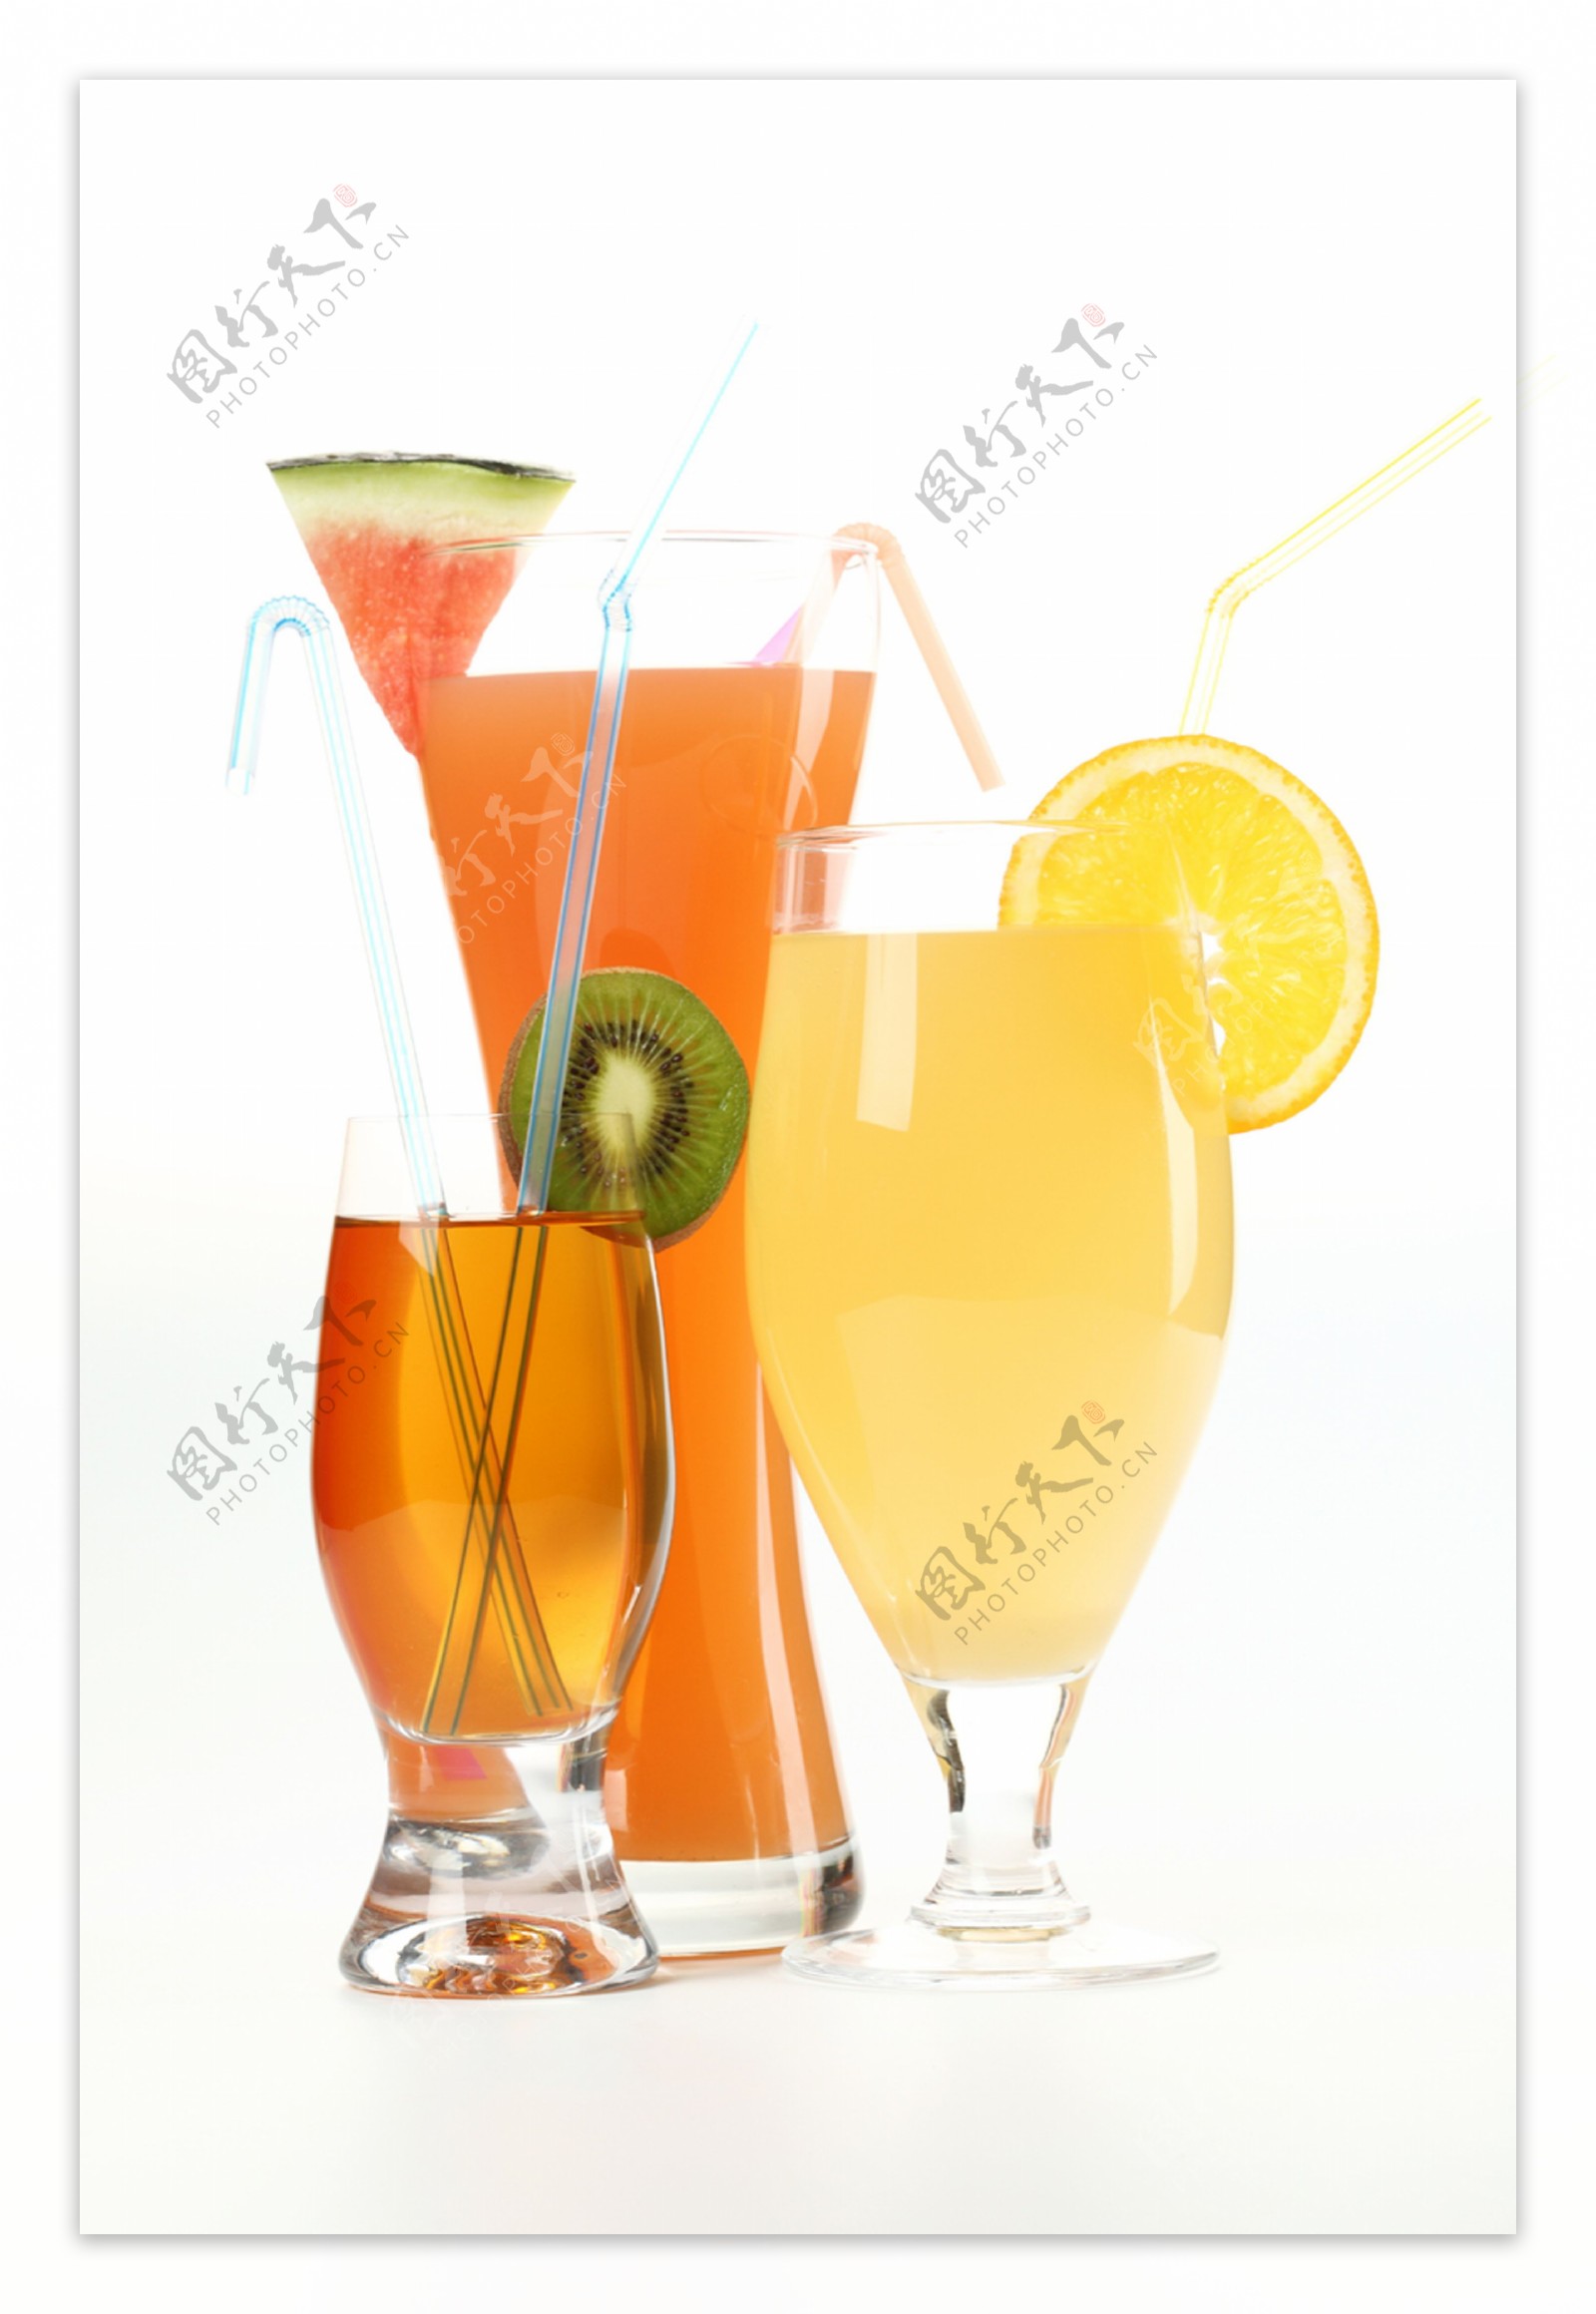 橙汁西瓜汁猕猴桃汁图片